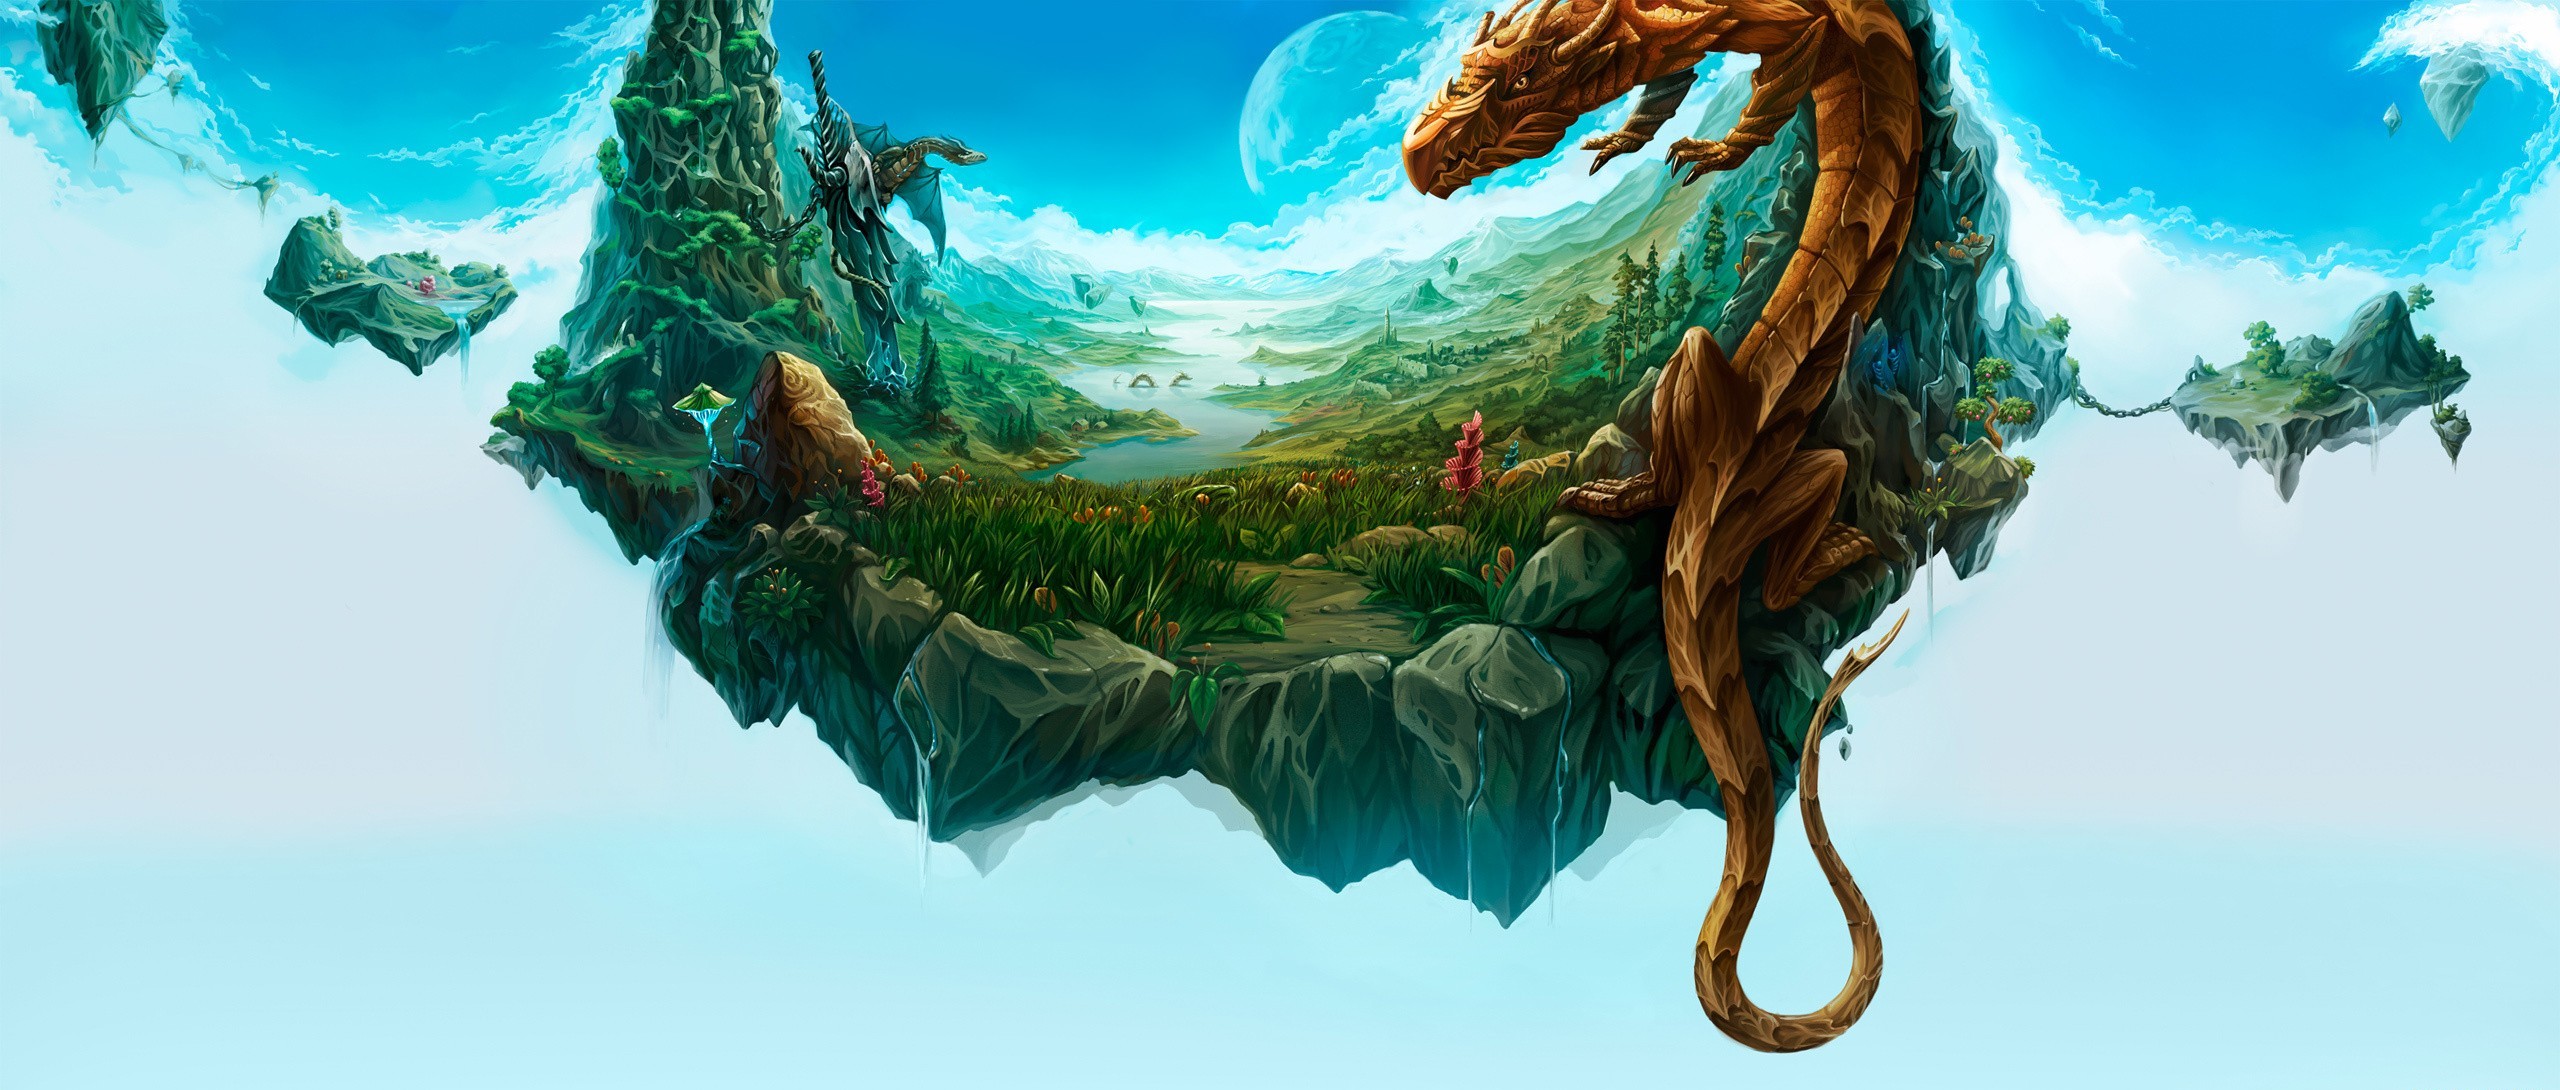 Download mobile wallpaper Landscape, Fantasy, Dragon, Island, Floating for free.